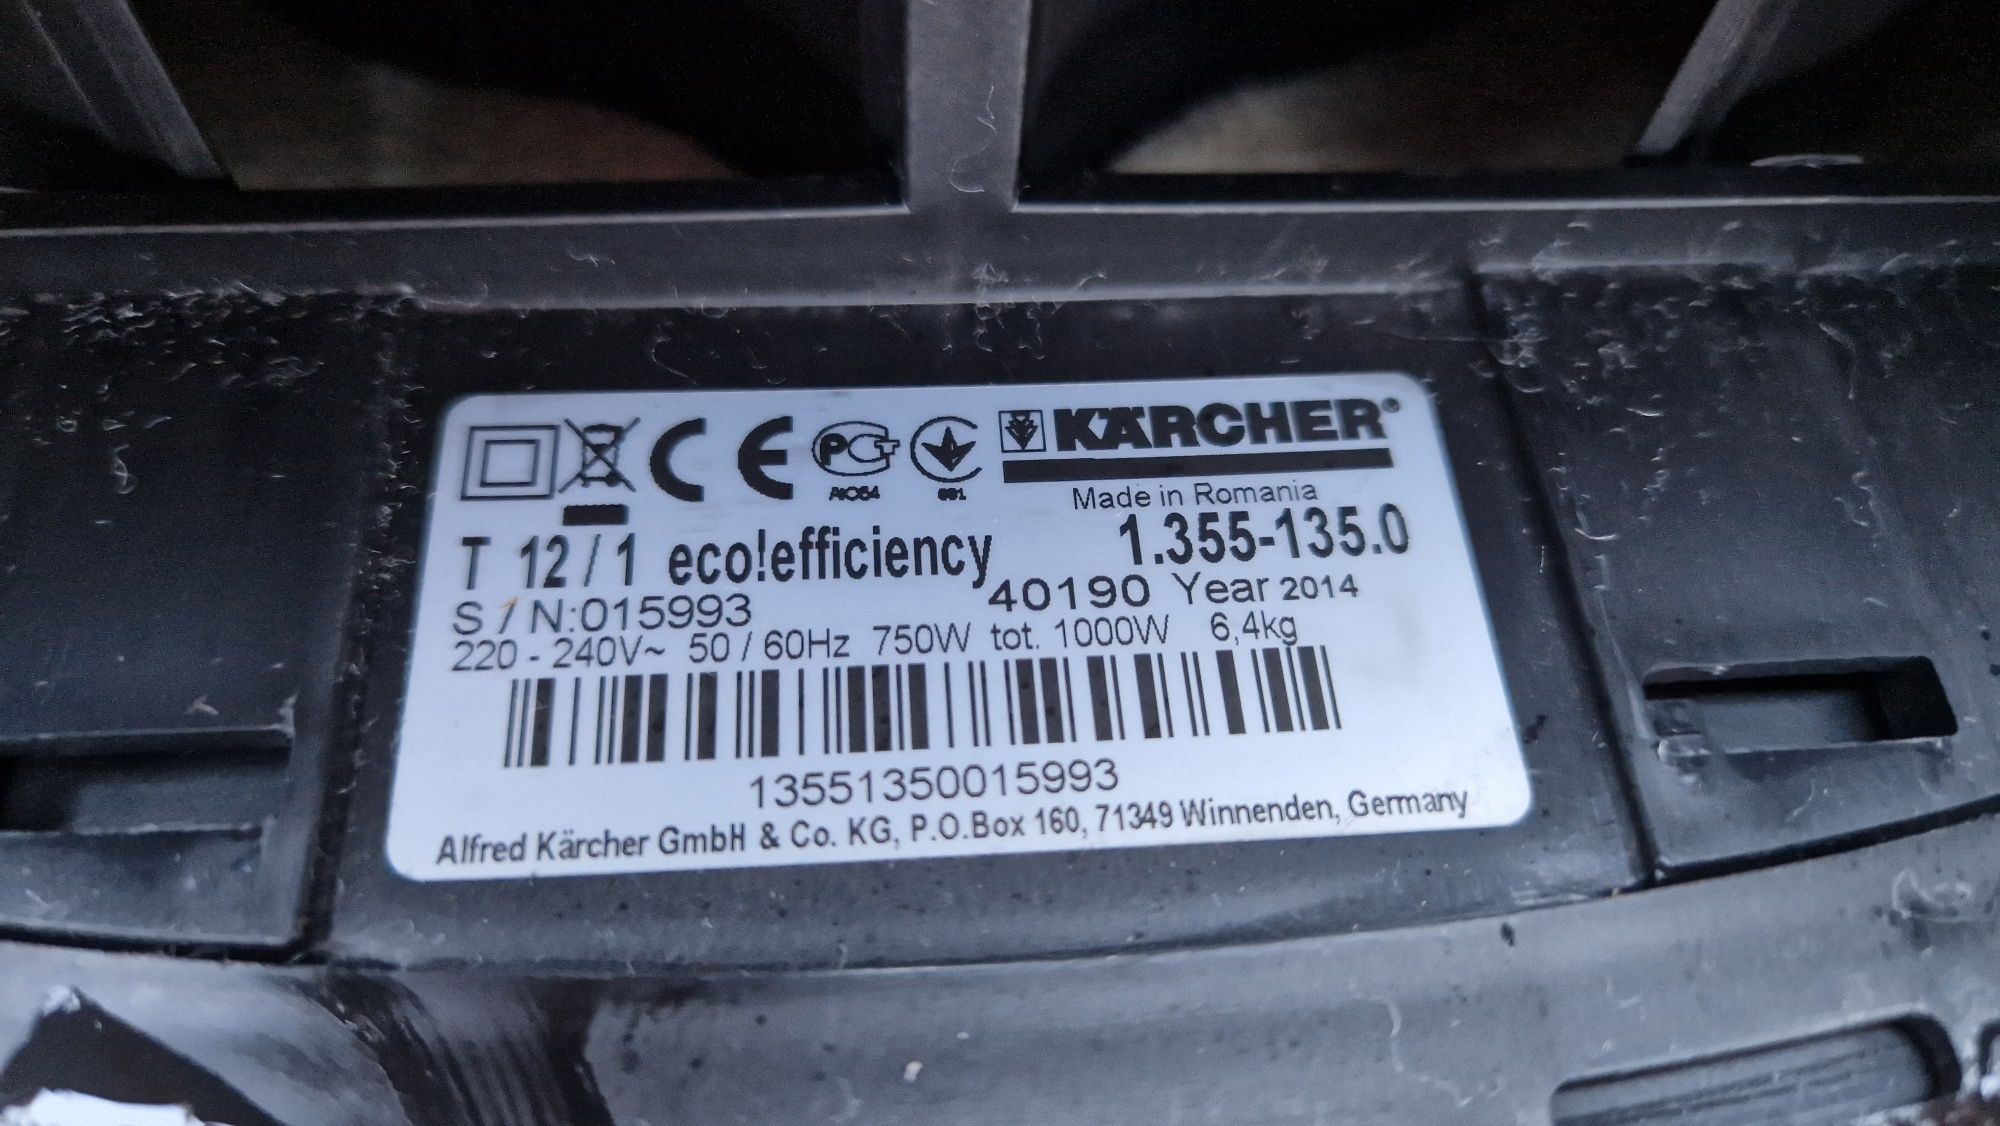 Професійний пилосос Karcher Professional T 12/1 eco efficiency